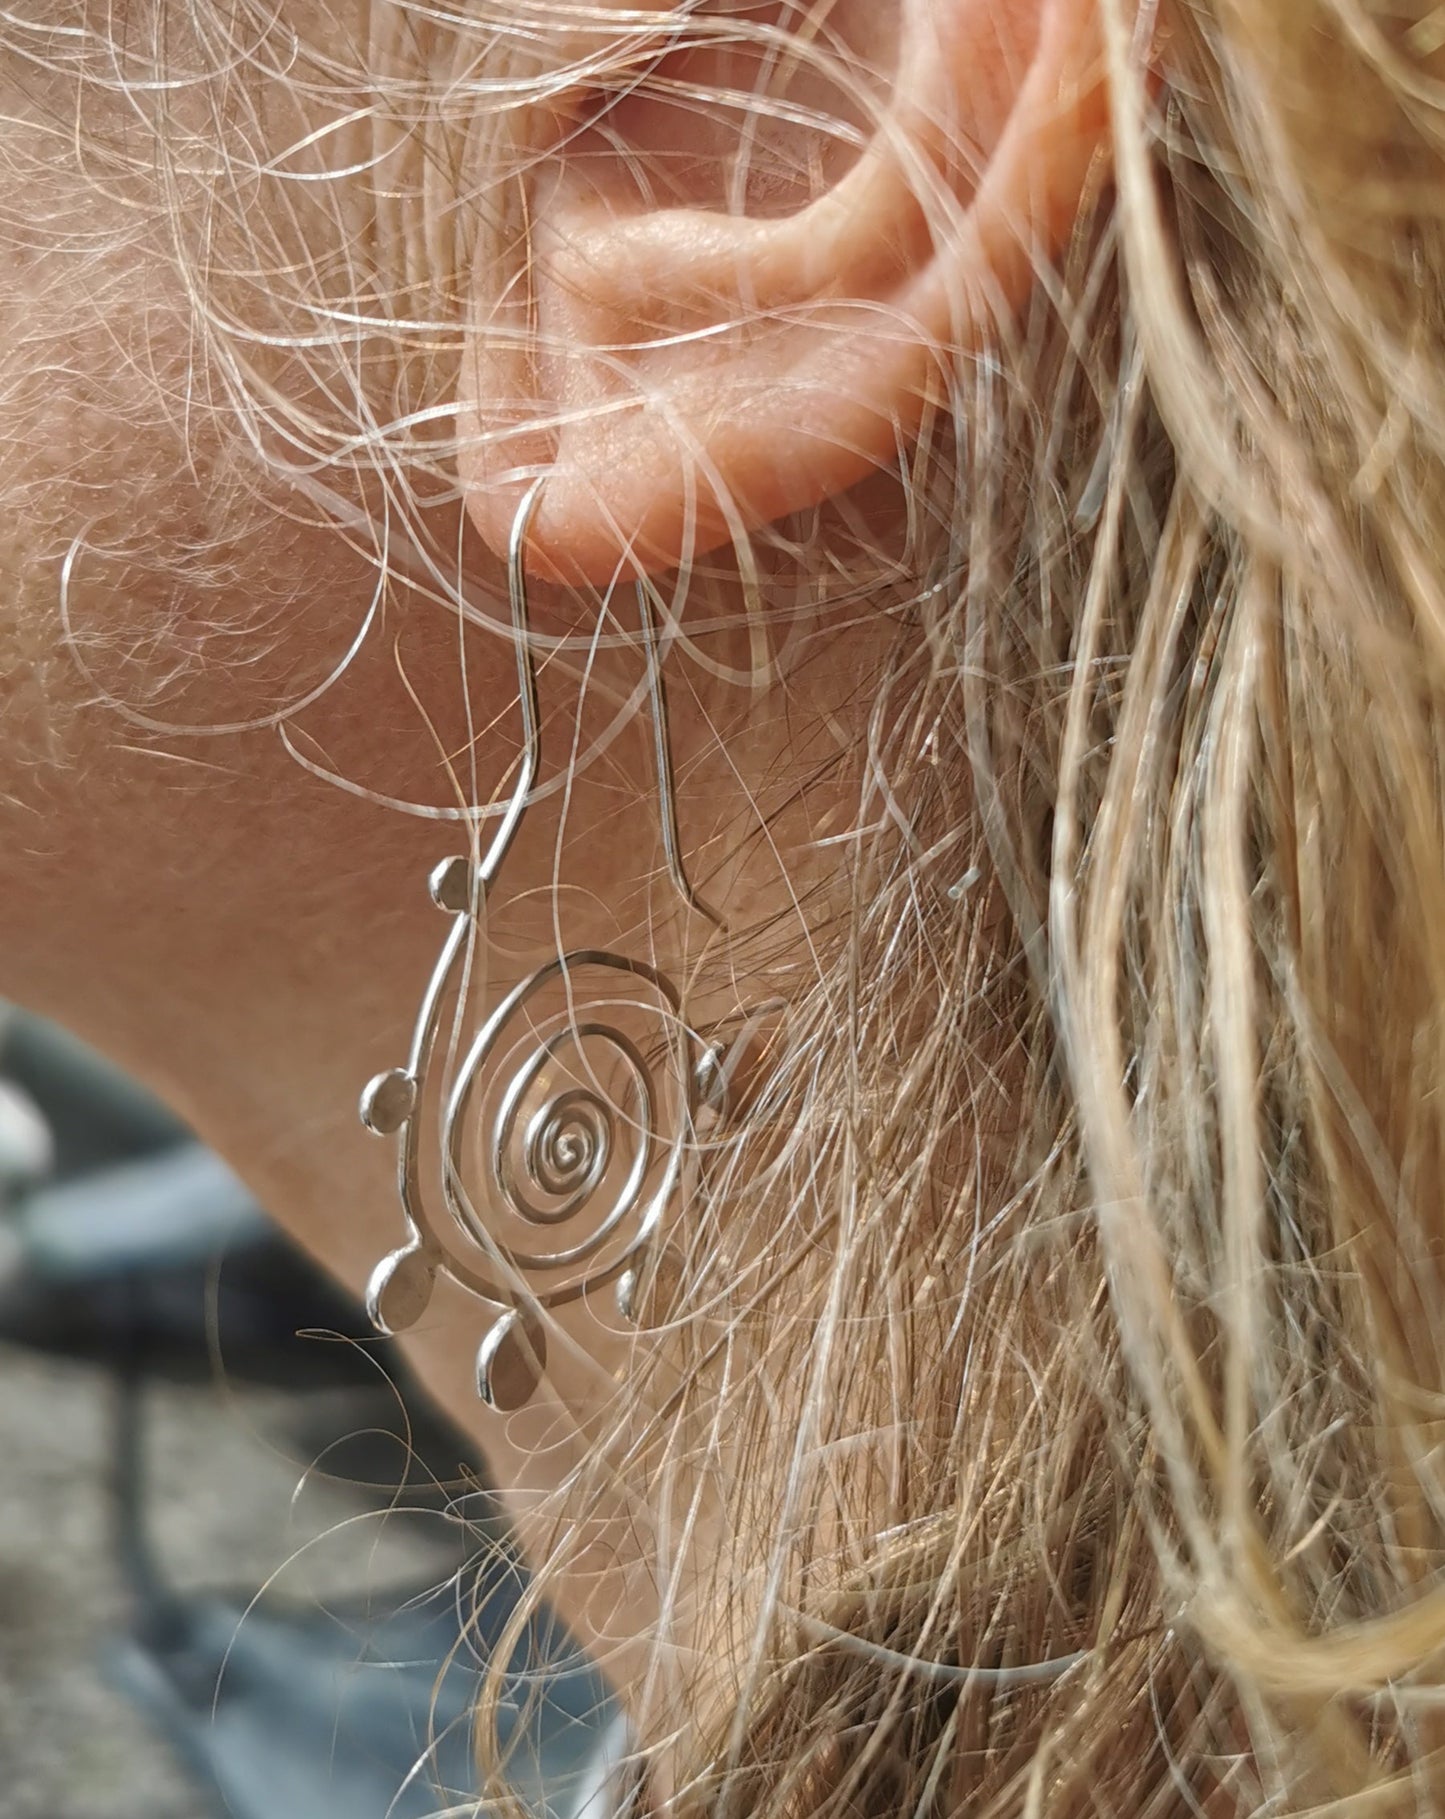 Spiral Drop Earrings